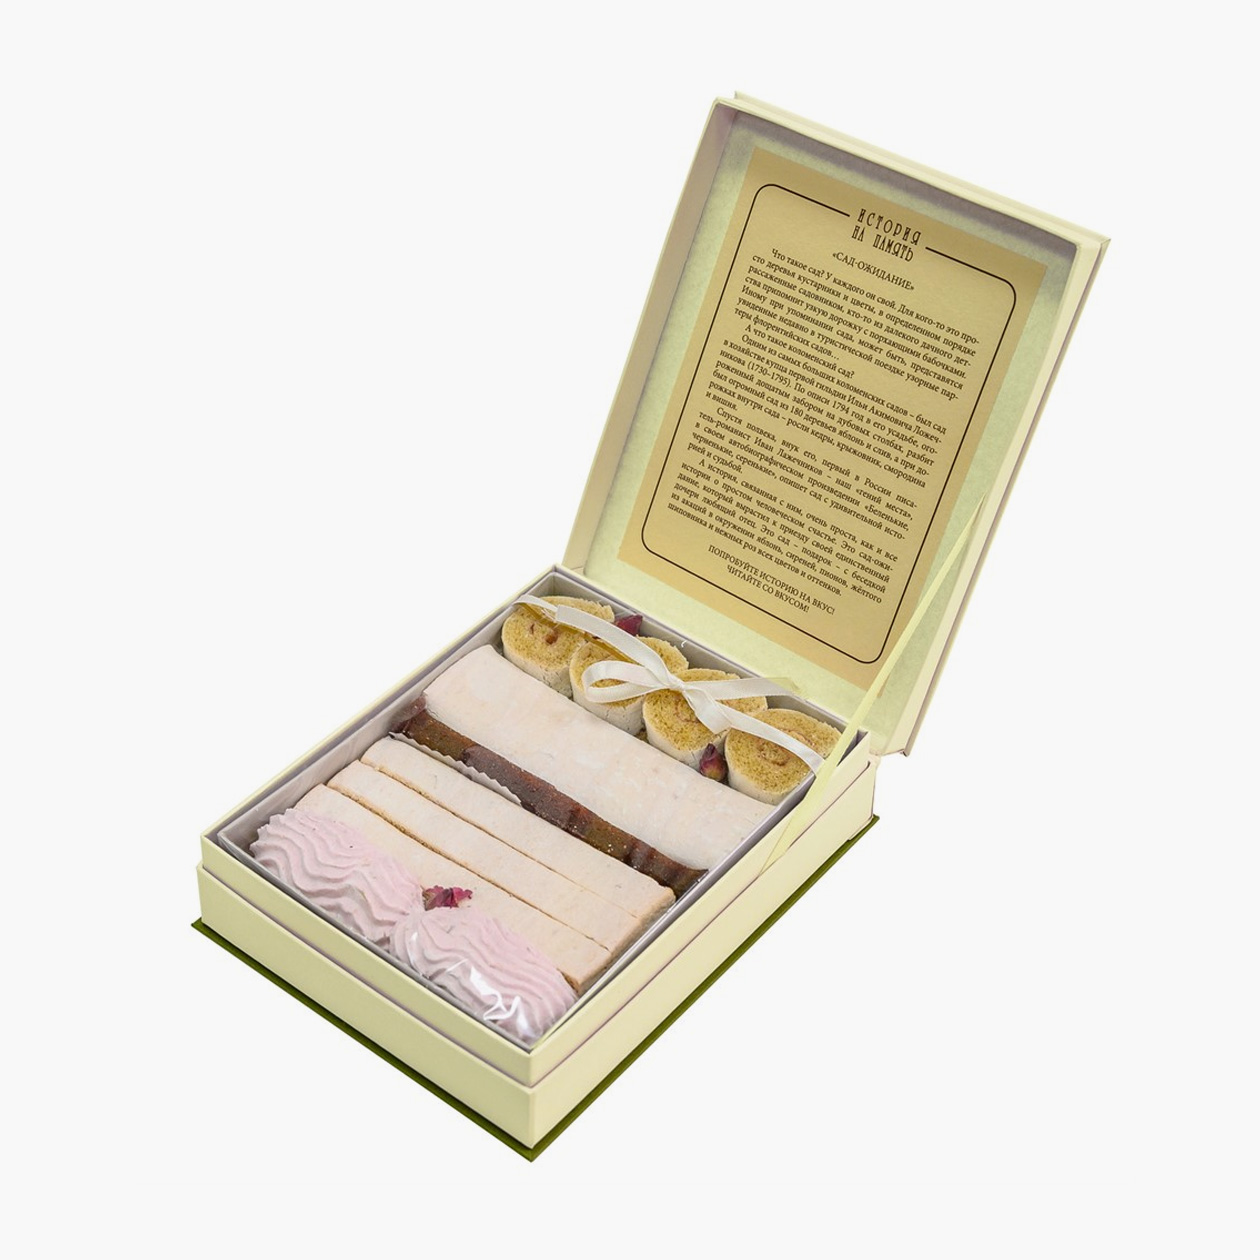 Подарочный набор пастилы из Коломны, который можно купить при музее. В упаковке 200 г десерта разных видов: рулетики, белая муфтовая пастила, плотная пастила смоква, зефир, рыхлая пастила. Источник: kolomnapastila.shop